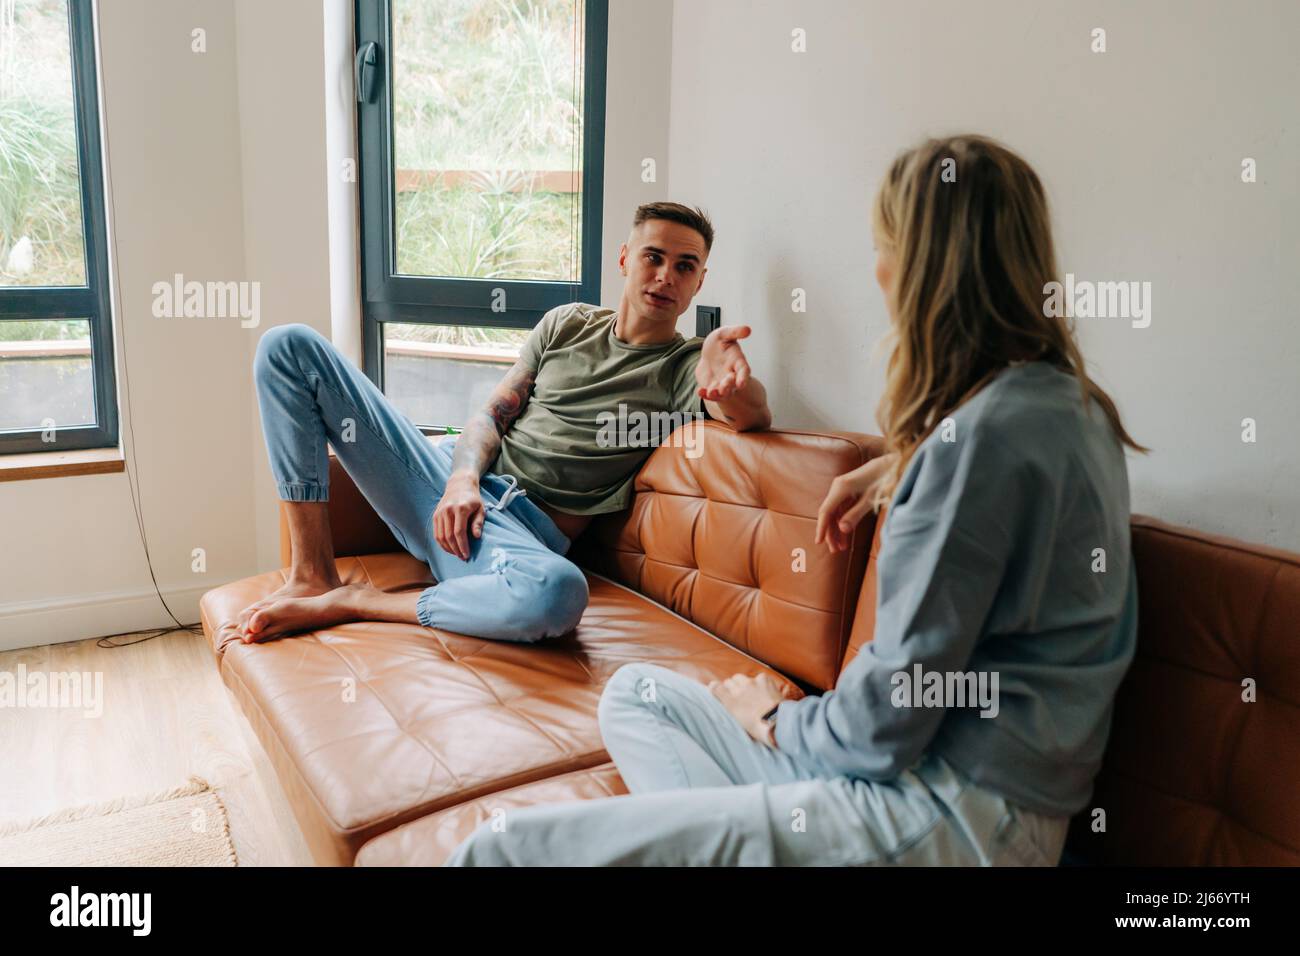 Un jeune homme discute avec sa petite amie en étant assis sur le canapé à la maison, une crise dans les relations familiales. Banque D'Images